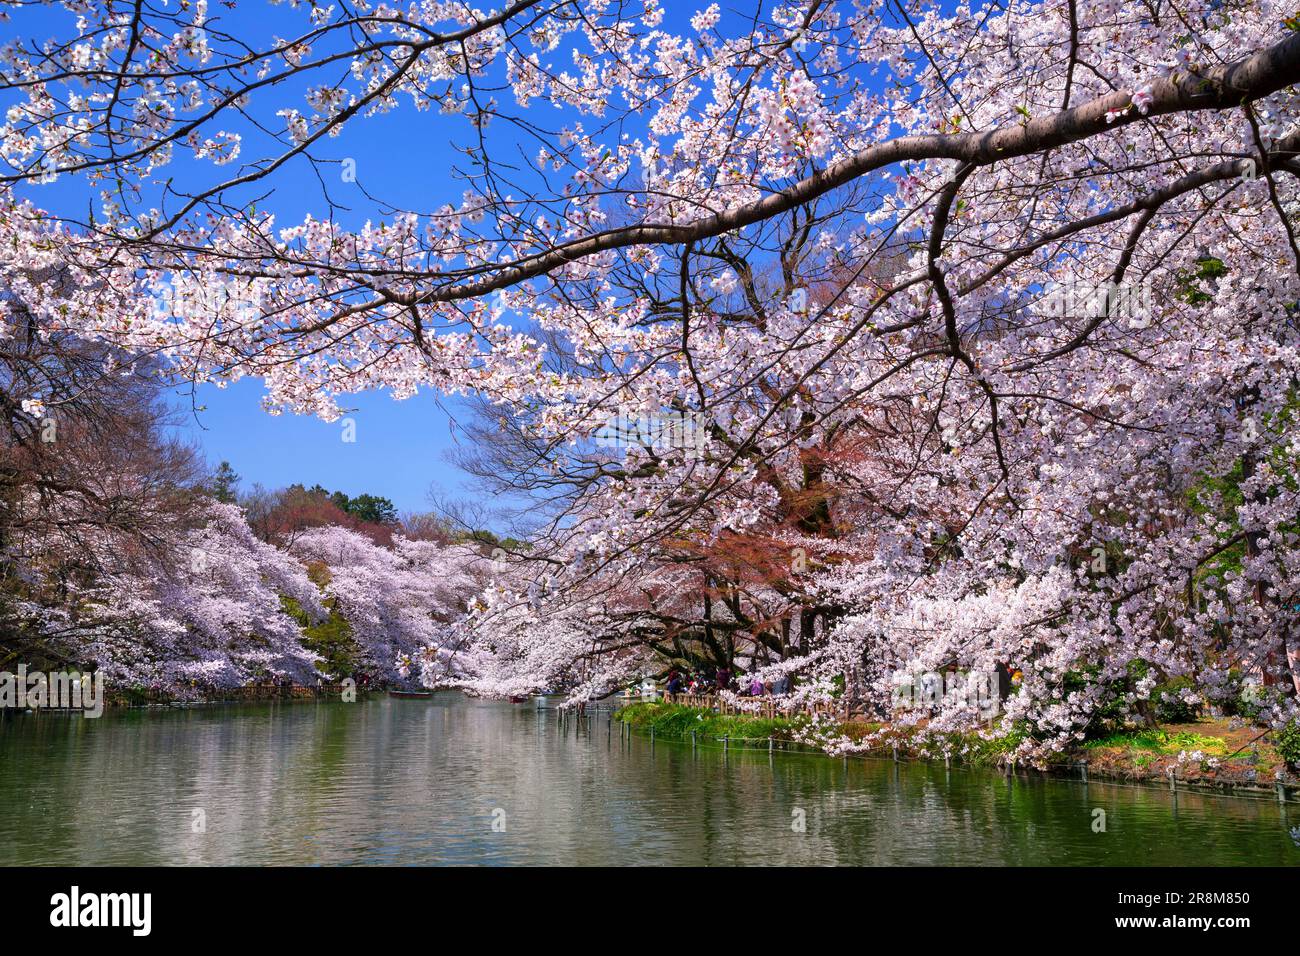 Cherry blossoms in Inokashira Park Stock Photo